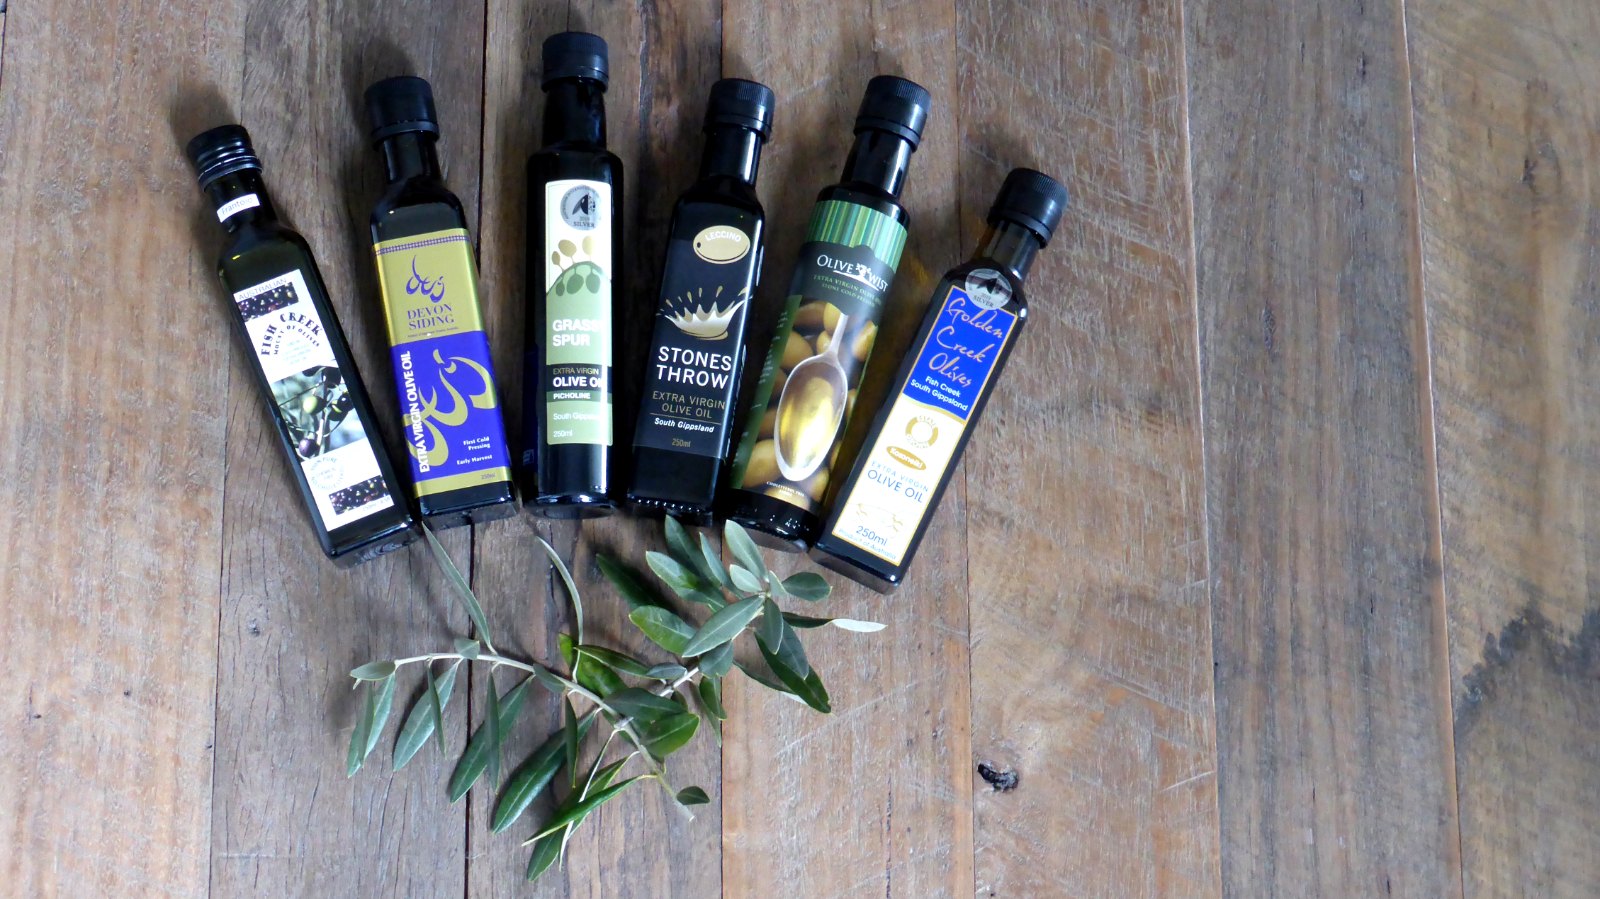 Image of 6 bottles of olive oil from Southern Gippsland Olives olive groves